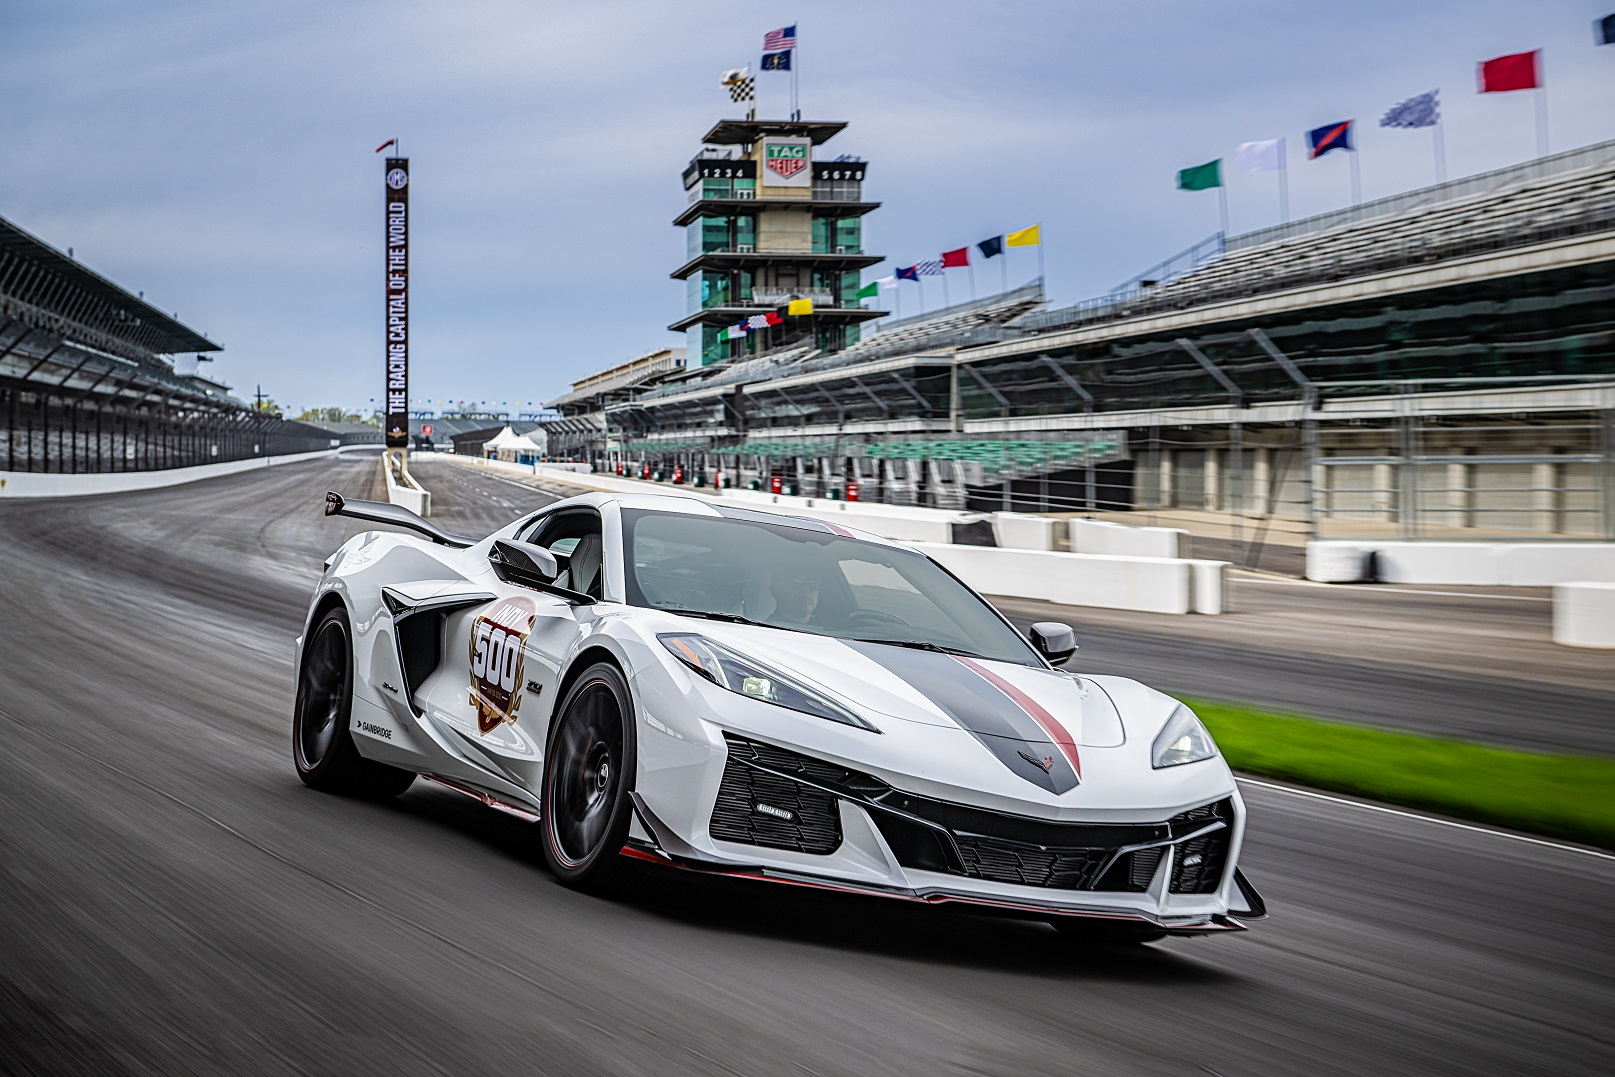 El Corvette Z06 2023 será el auto de seguridad en la 106 edición de la carrera Indianapolis 500